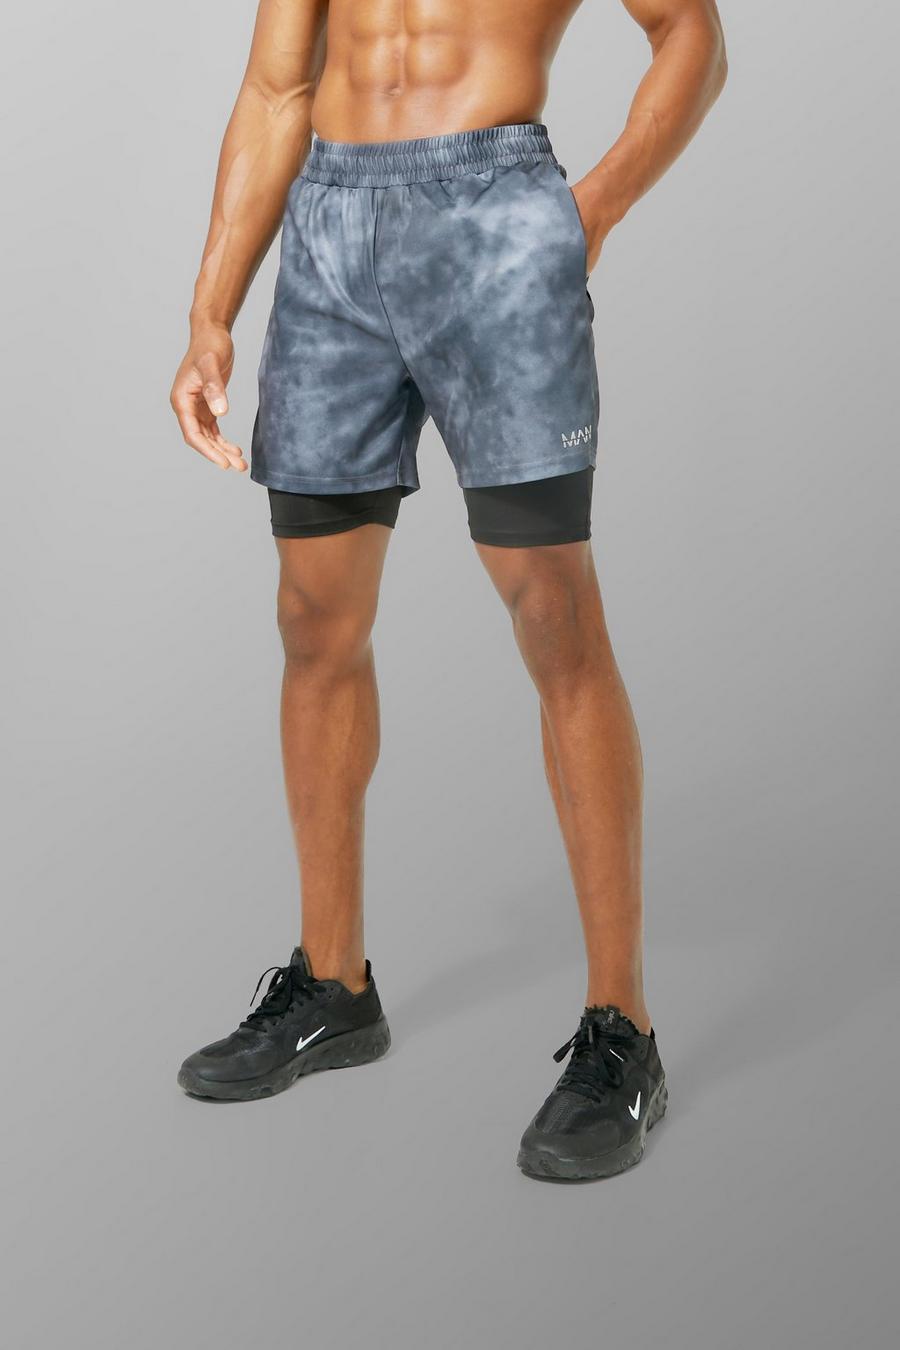 Pantalón corto MAN Active resistente 2 en 1 con desteñido anudado, Black image number 1